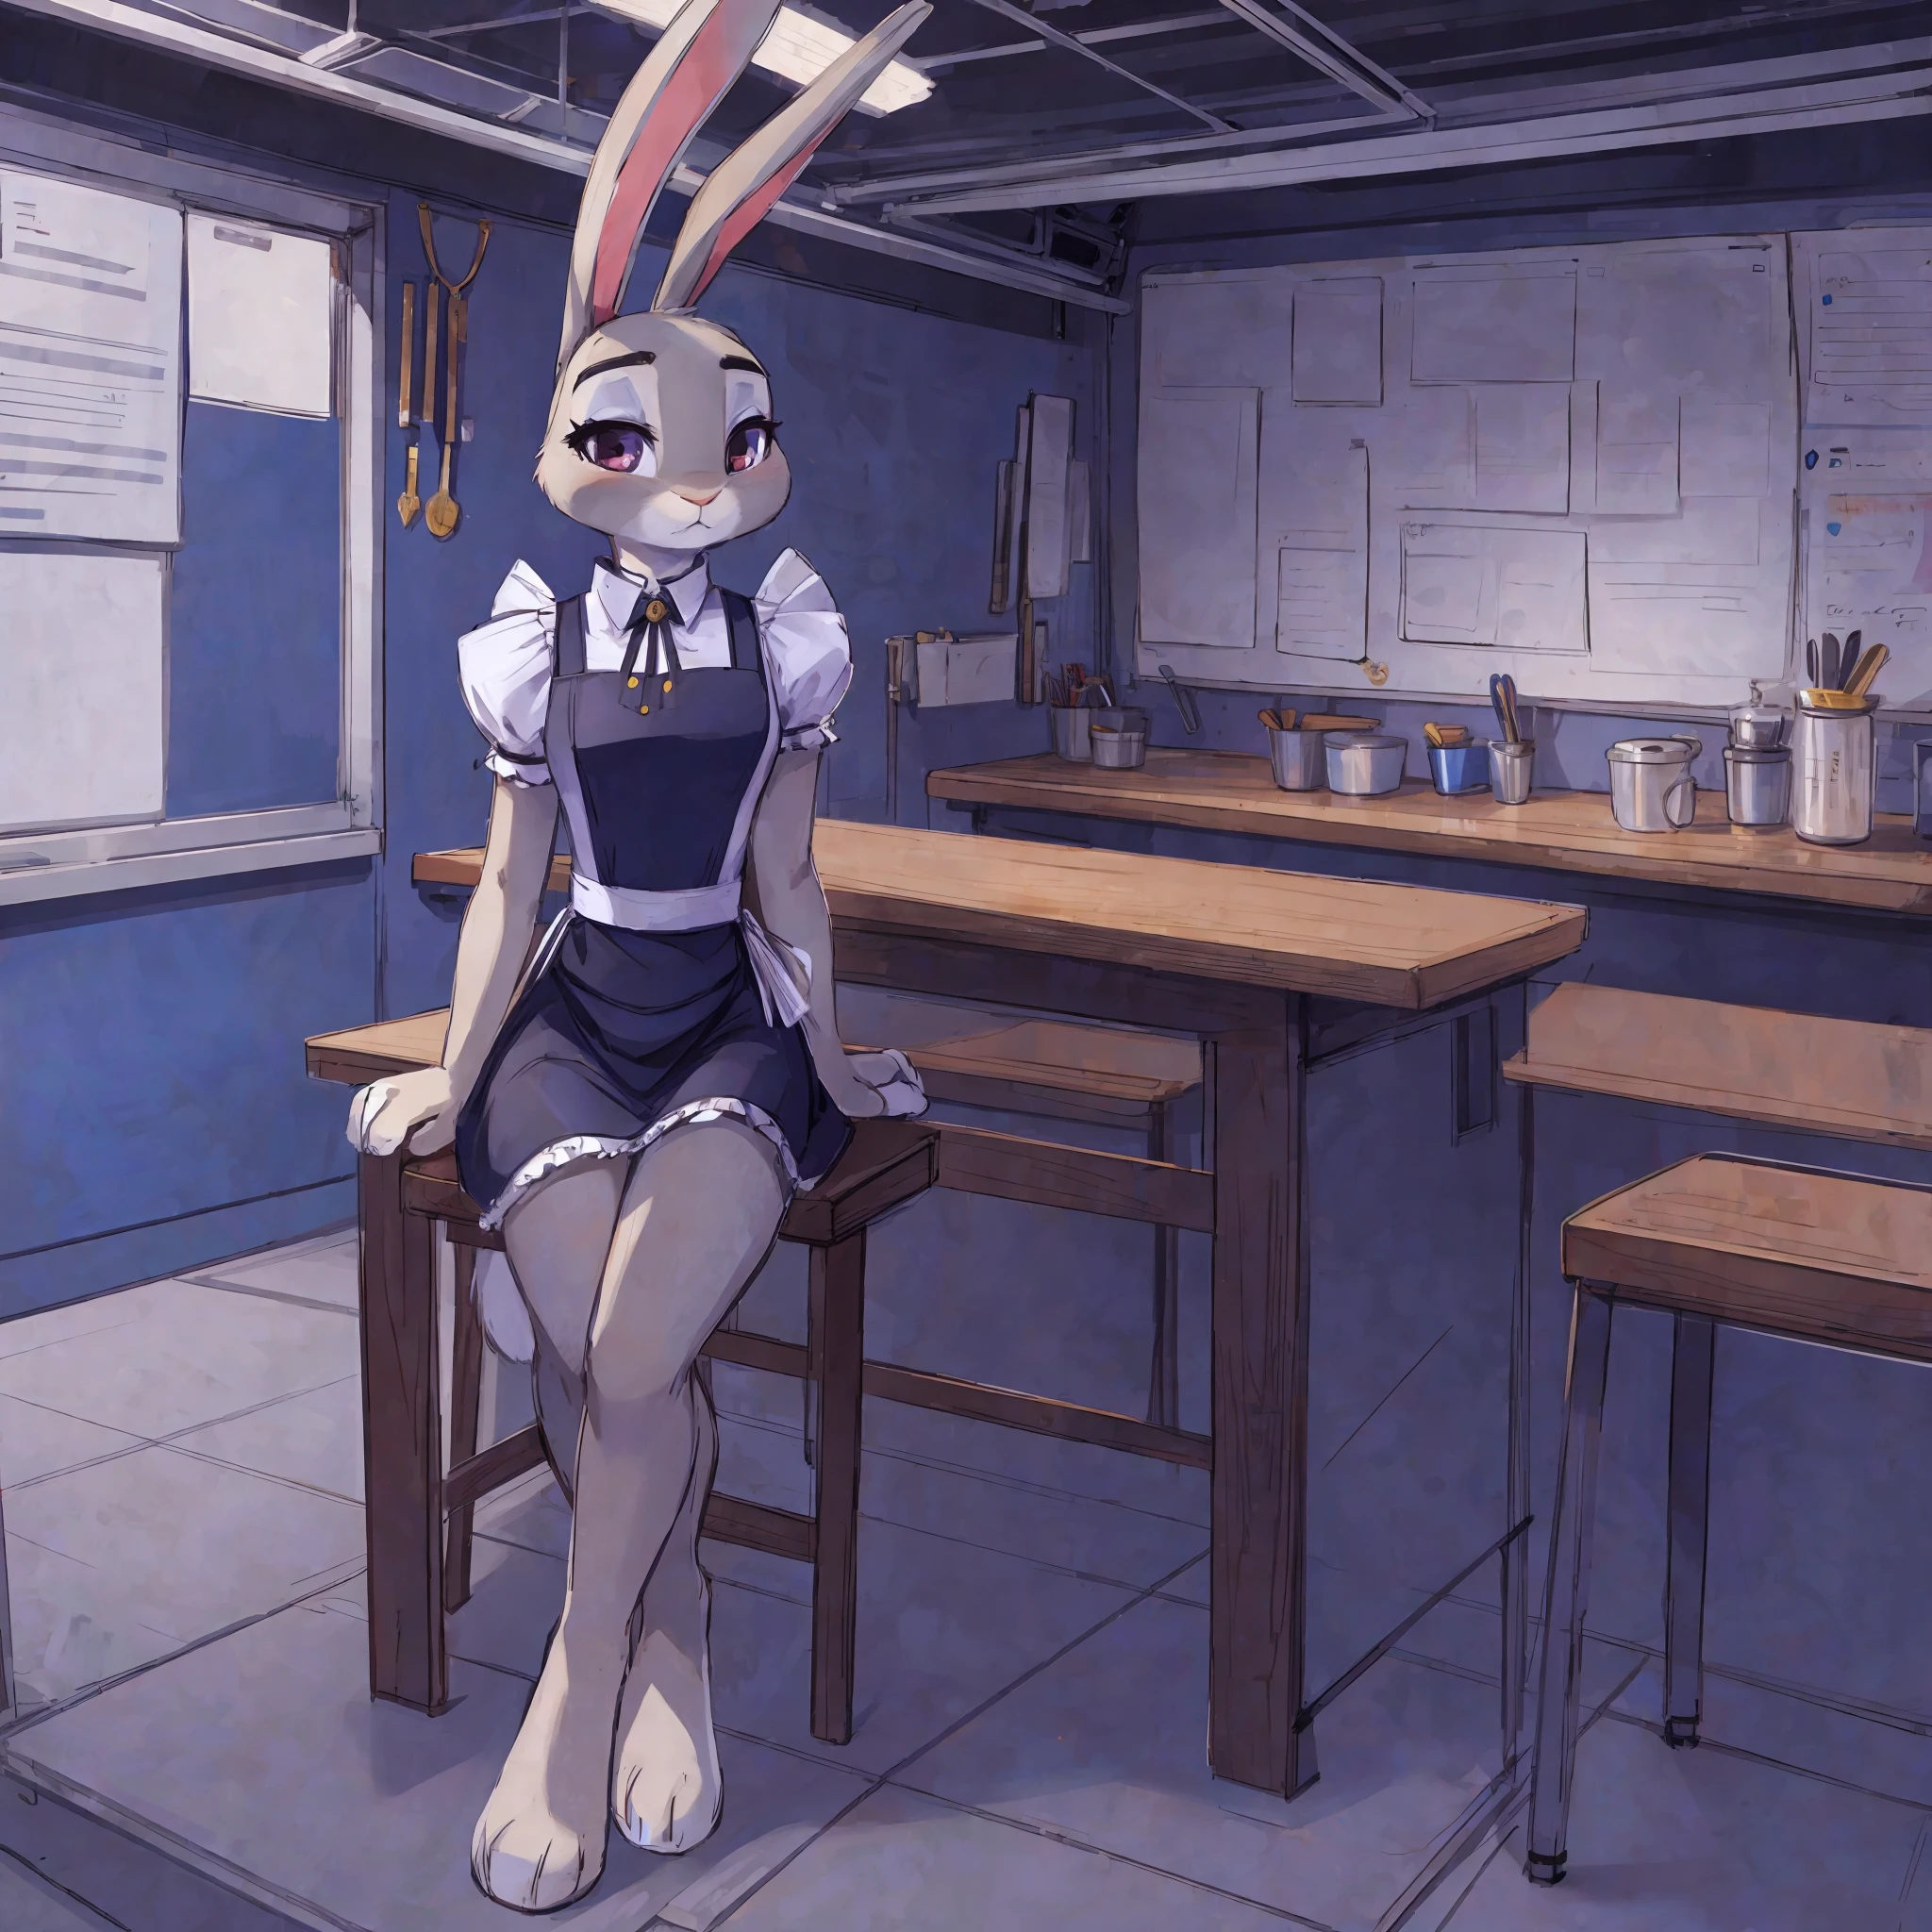 (chica antro conejo, orejas de conejo:1.2),, (1 chica) (bosquejo) (Sesión, fondo del taller, uniforme de mucama), (((Solo))), solo hay 1 personaje en el escenario.